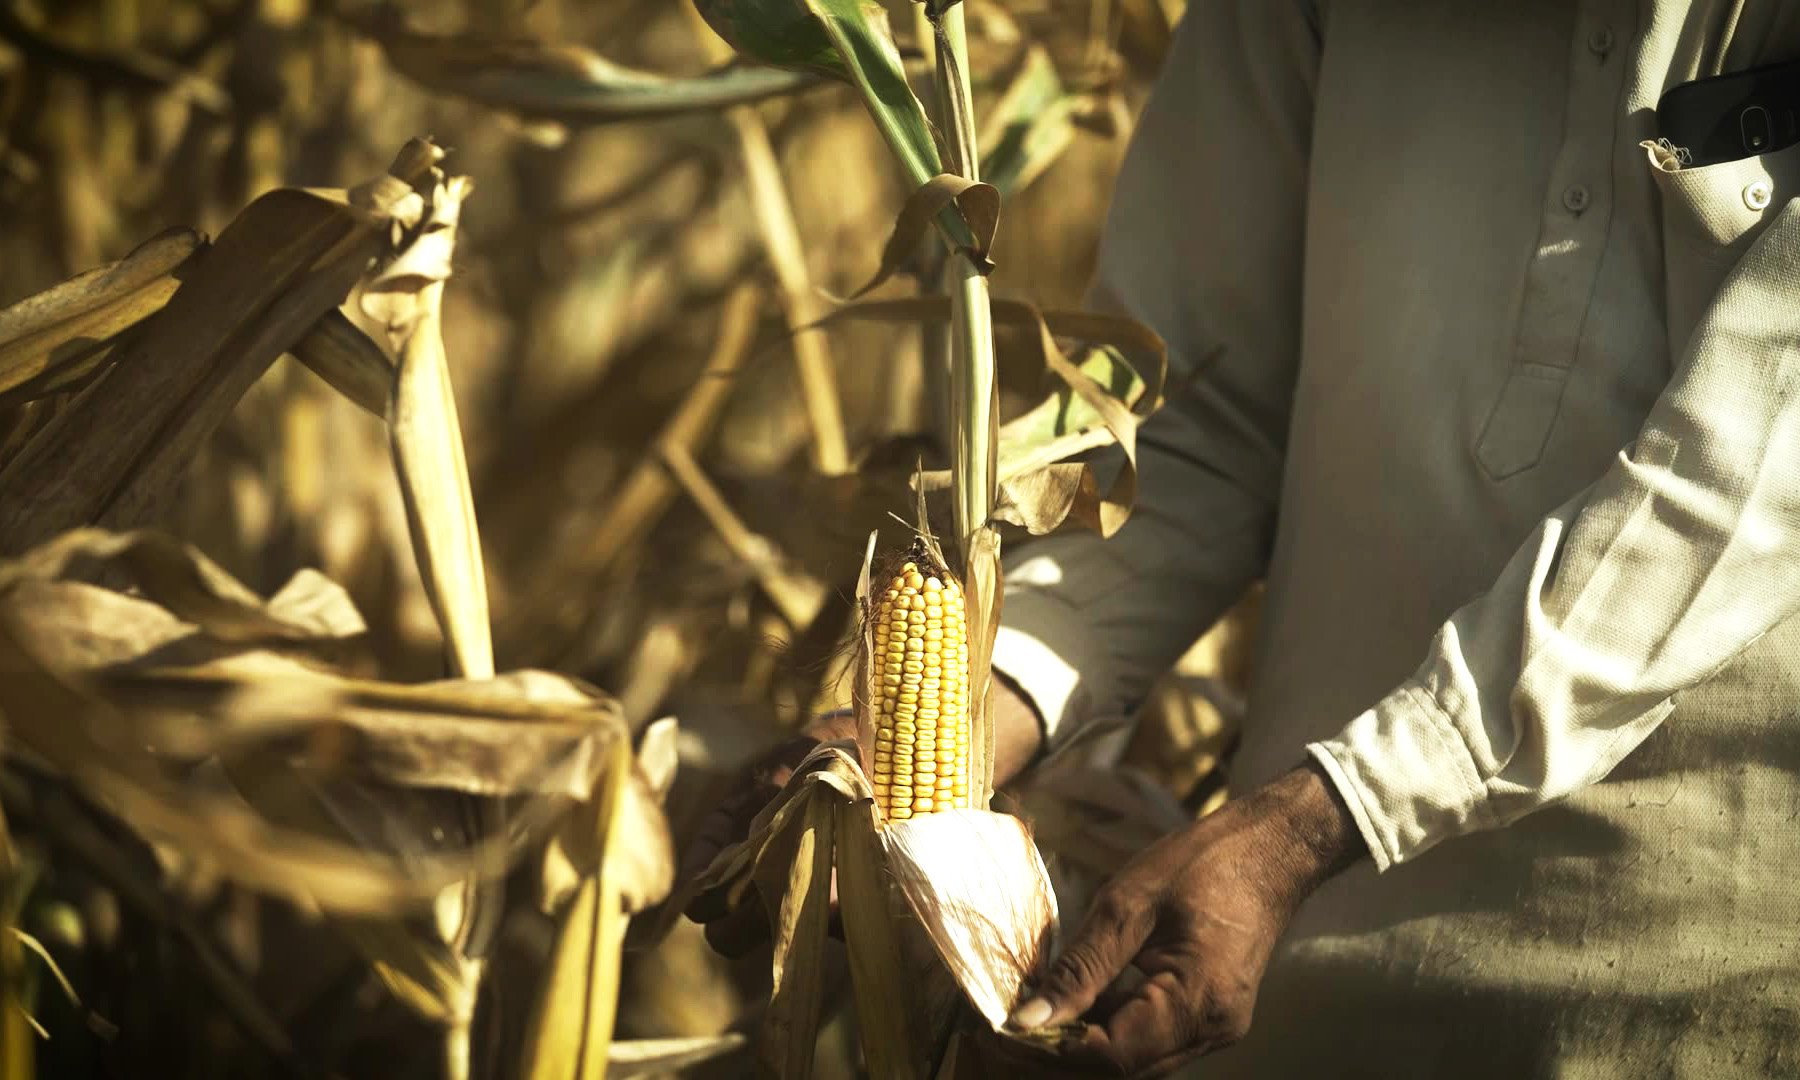 Man's hands peel back ear of corn in a field